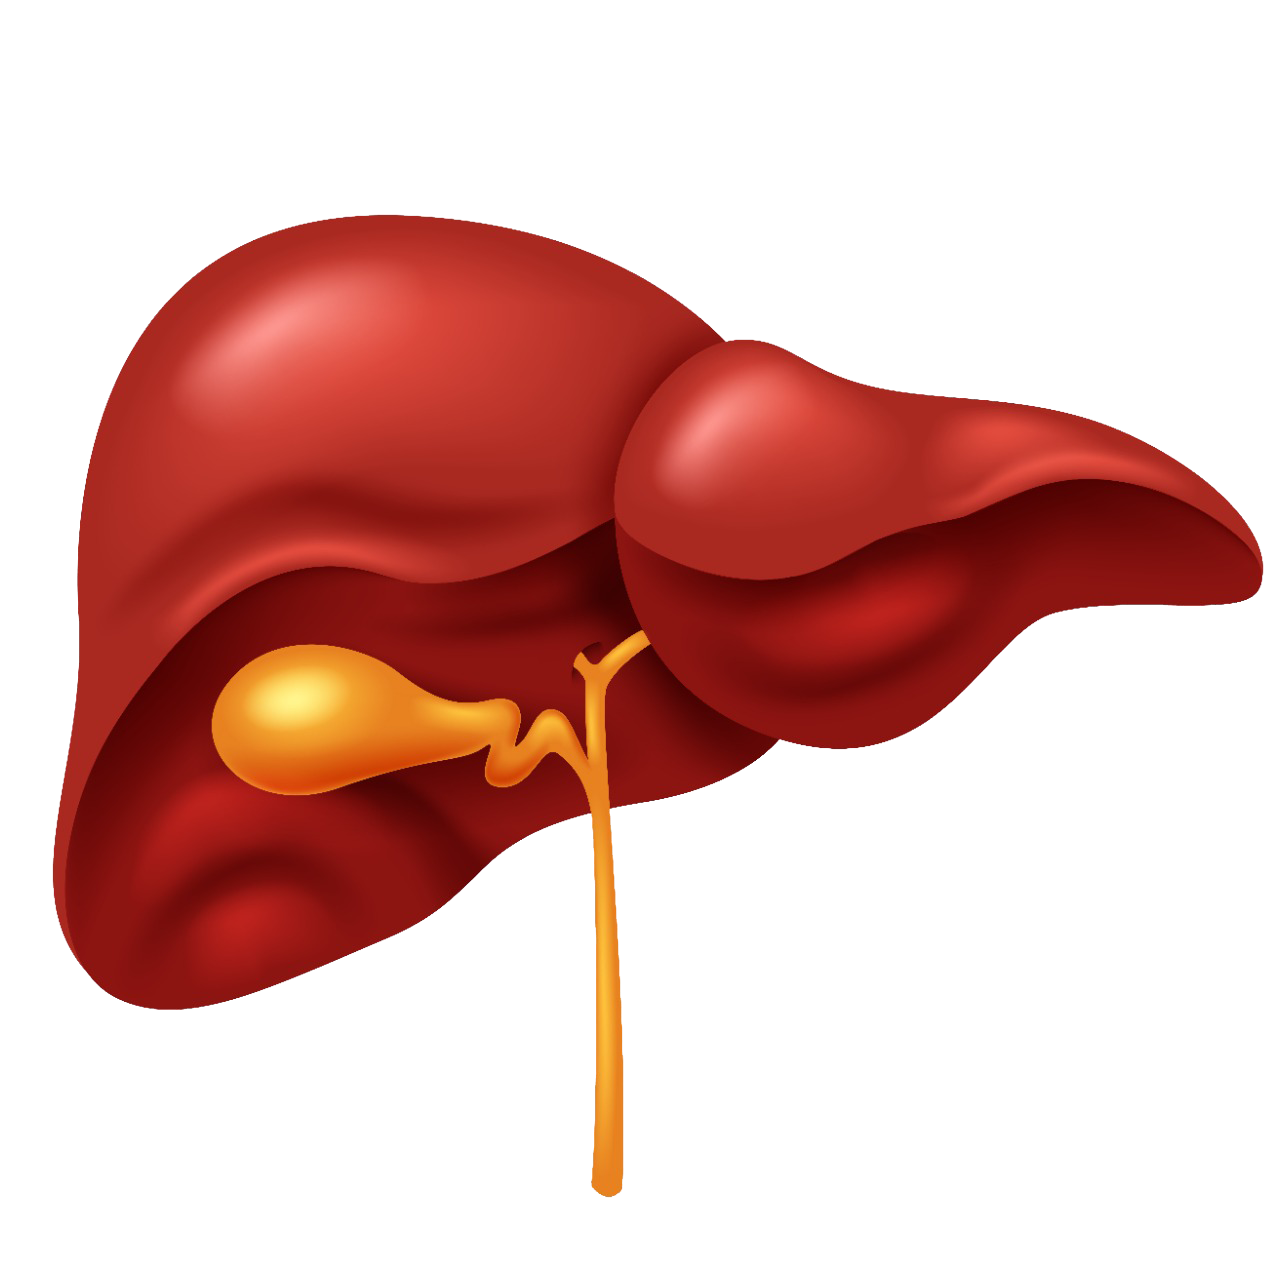 Illustration of human liver 